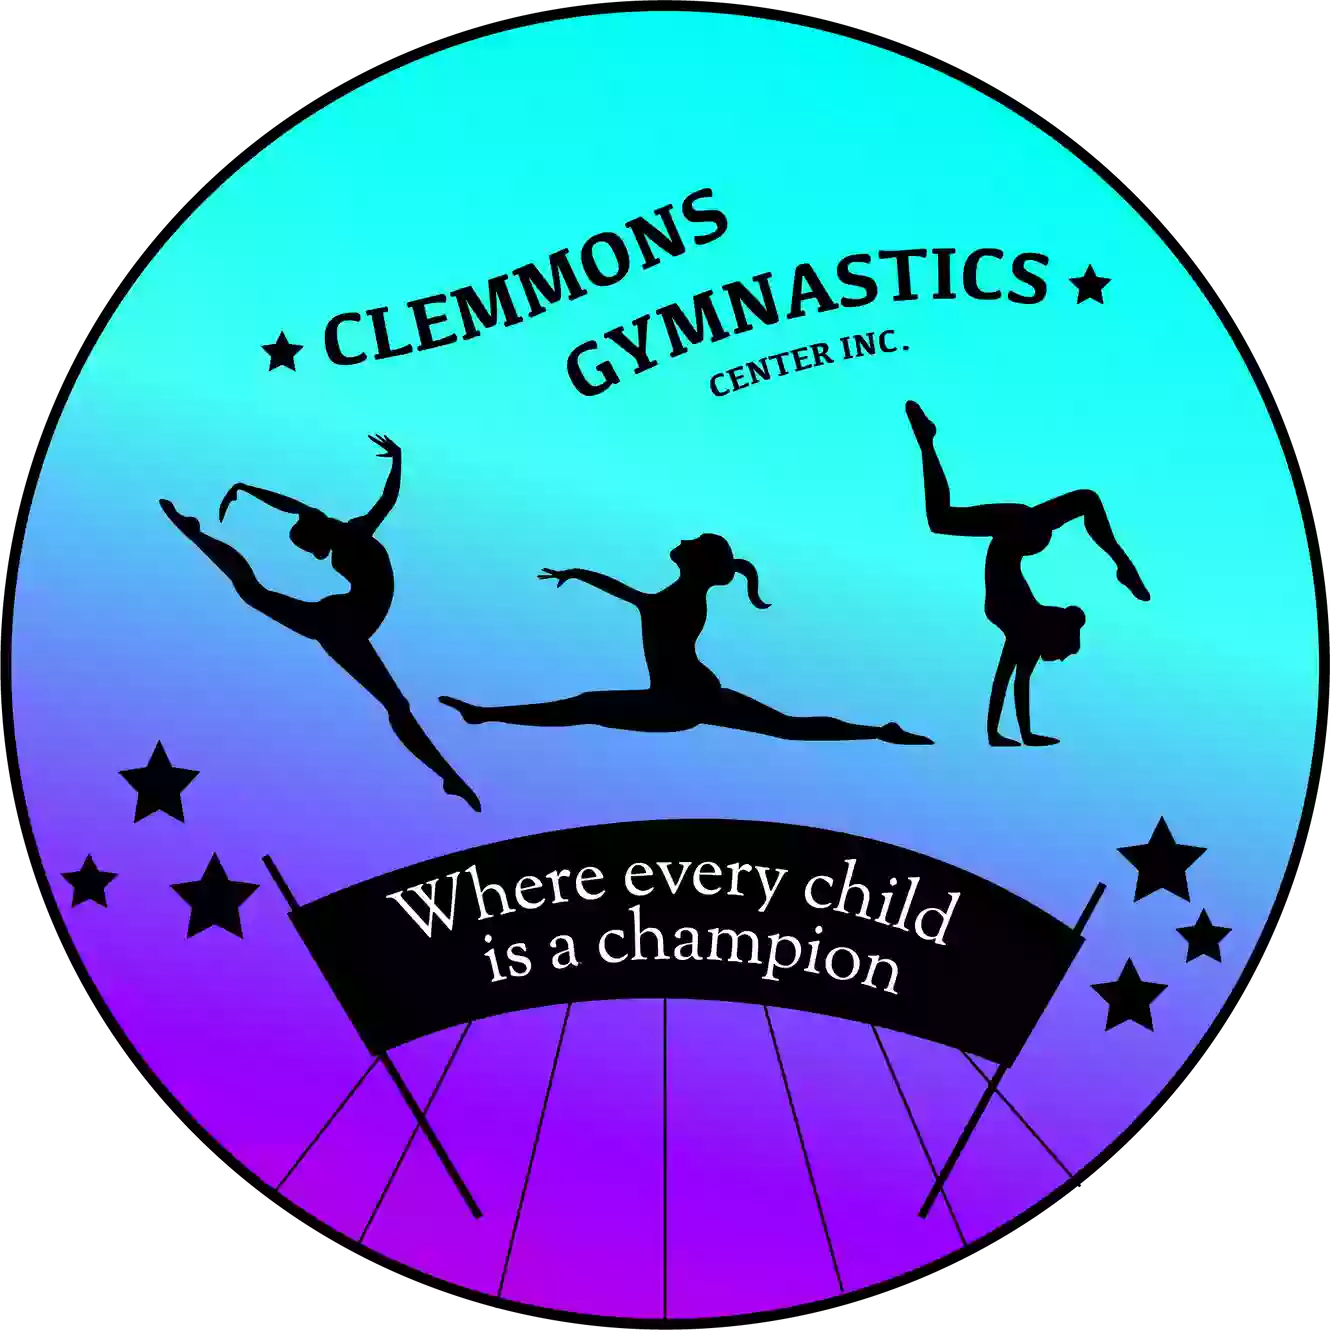 Clemmon's Gymnastics Center